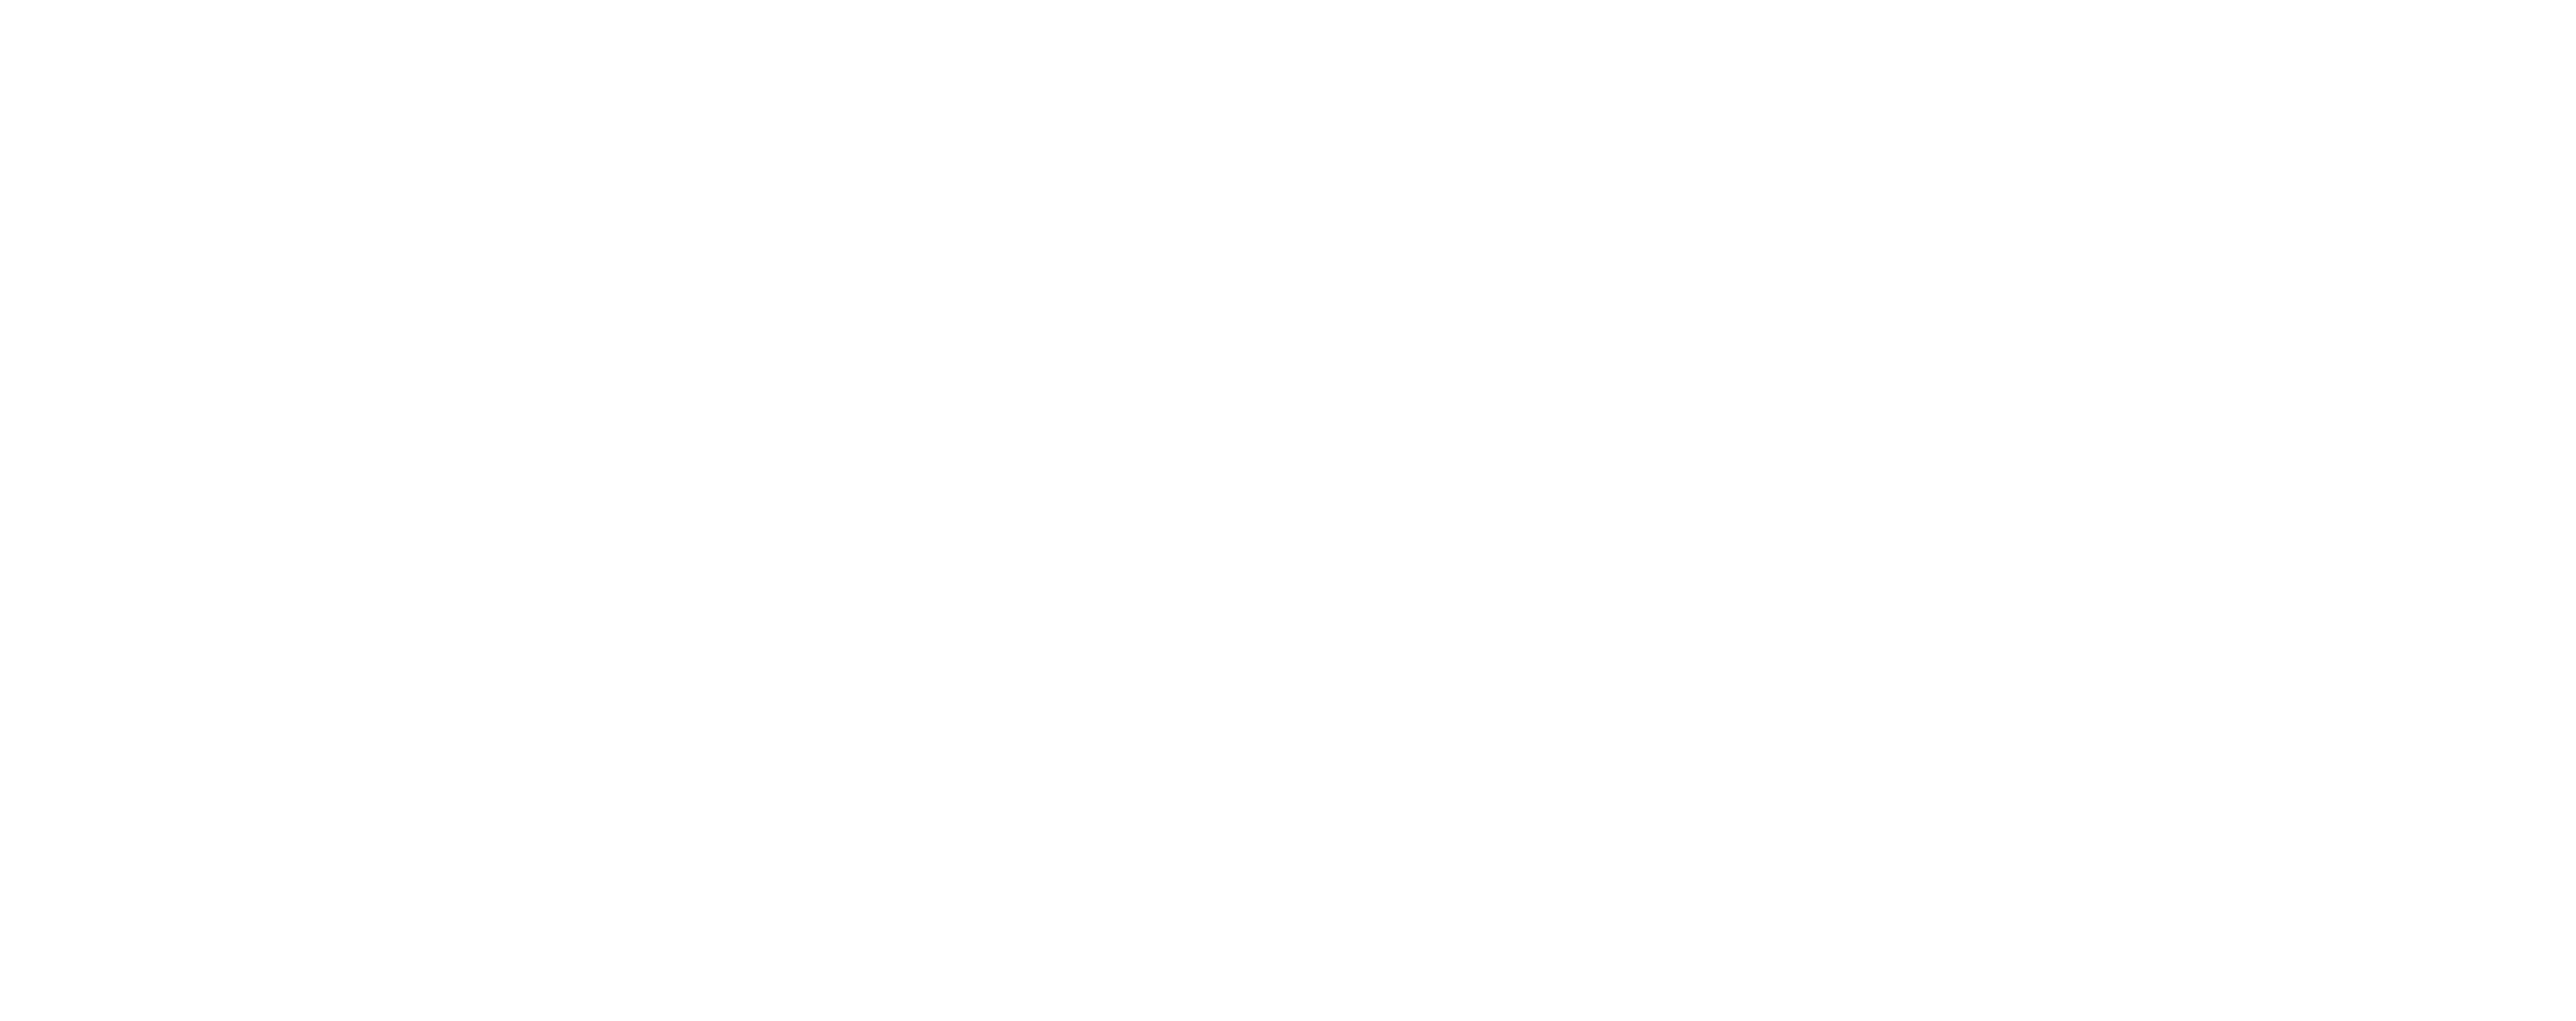 Logotipo de Highland